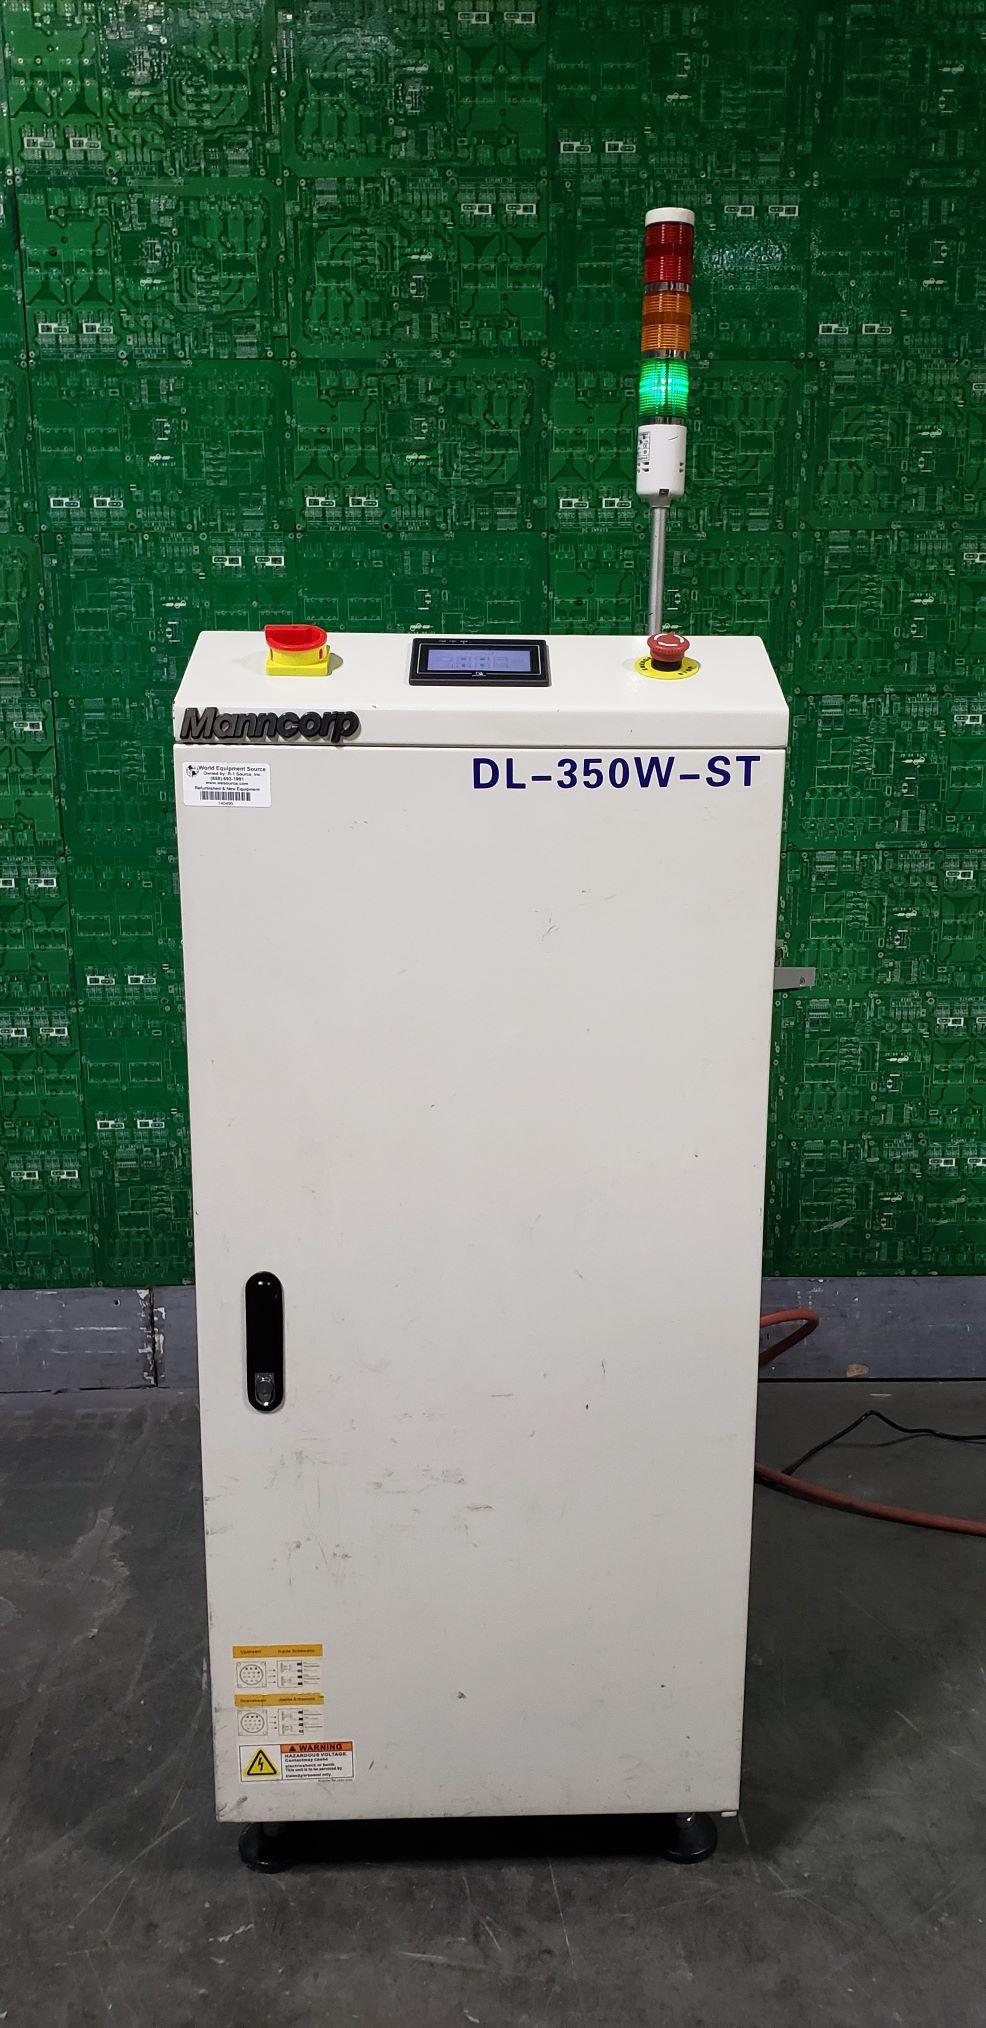  DL-350W-ST